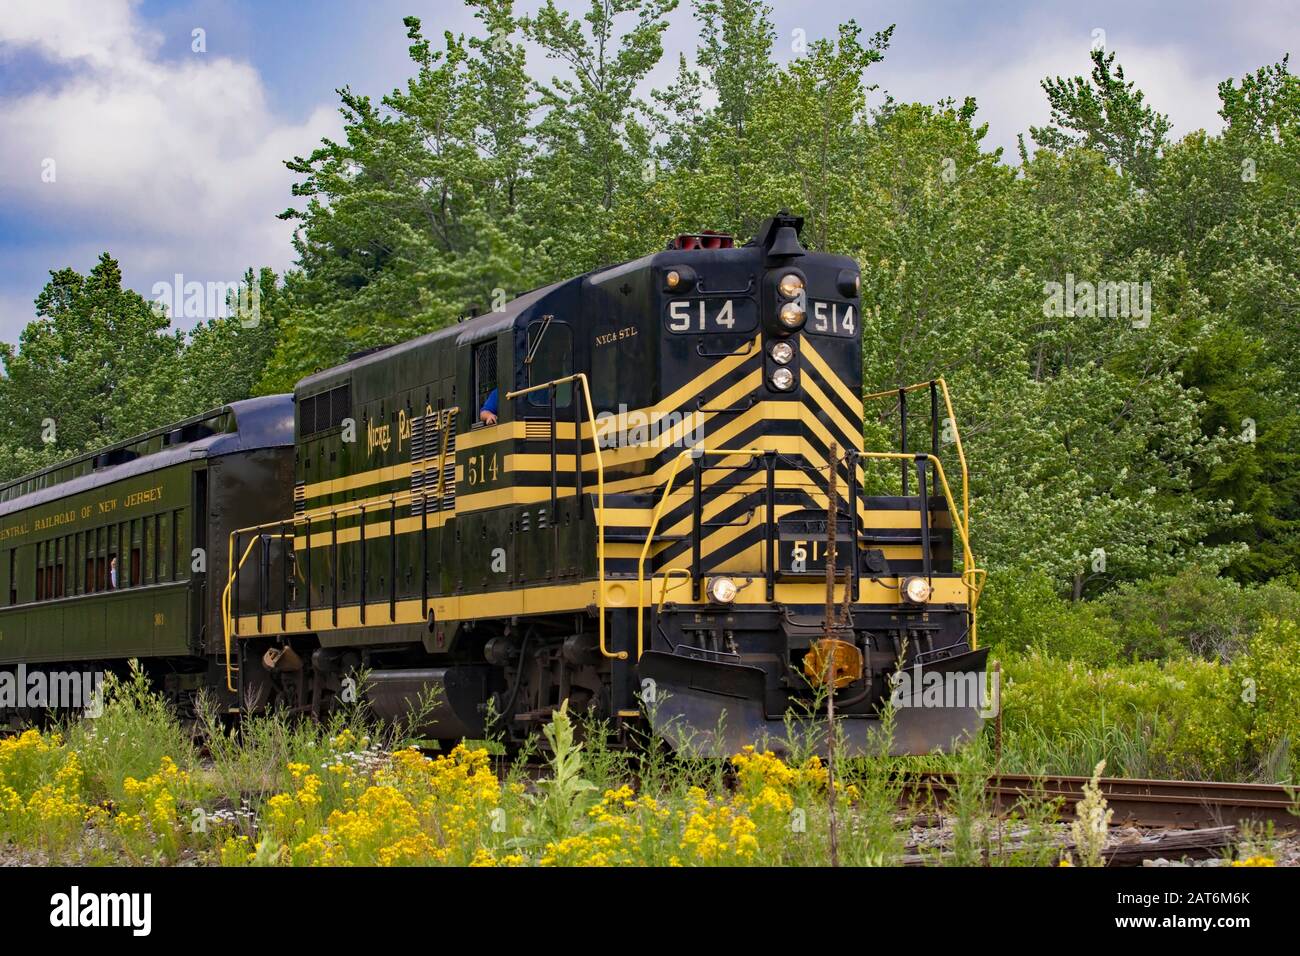 Locomotiva diesel-elettrica su Nickel Plate Road 514 nella collezione Steamtown National Historic Site a Scranton, Pennsylvania Foto Stock